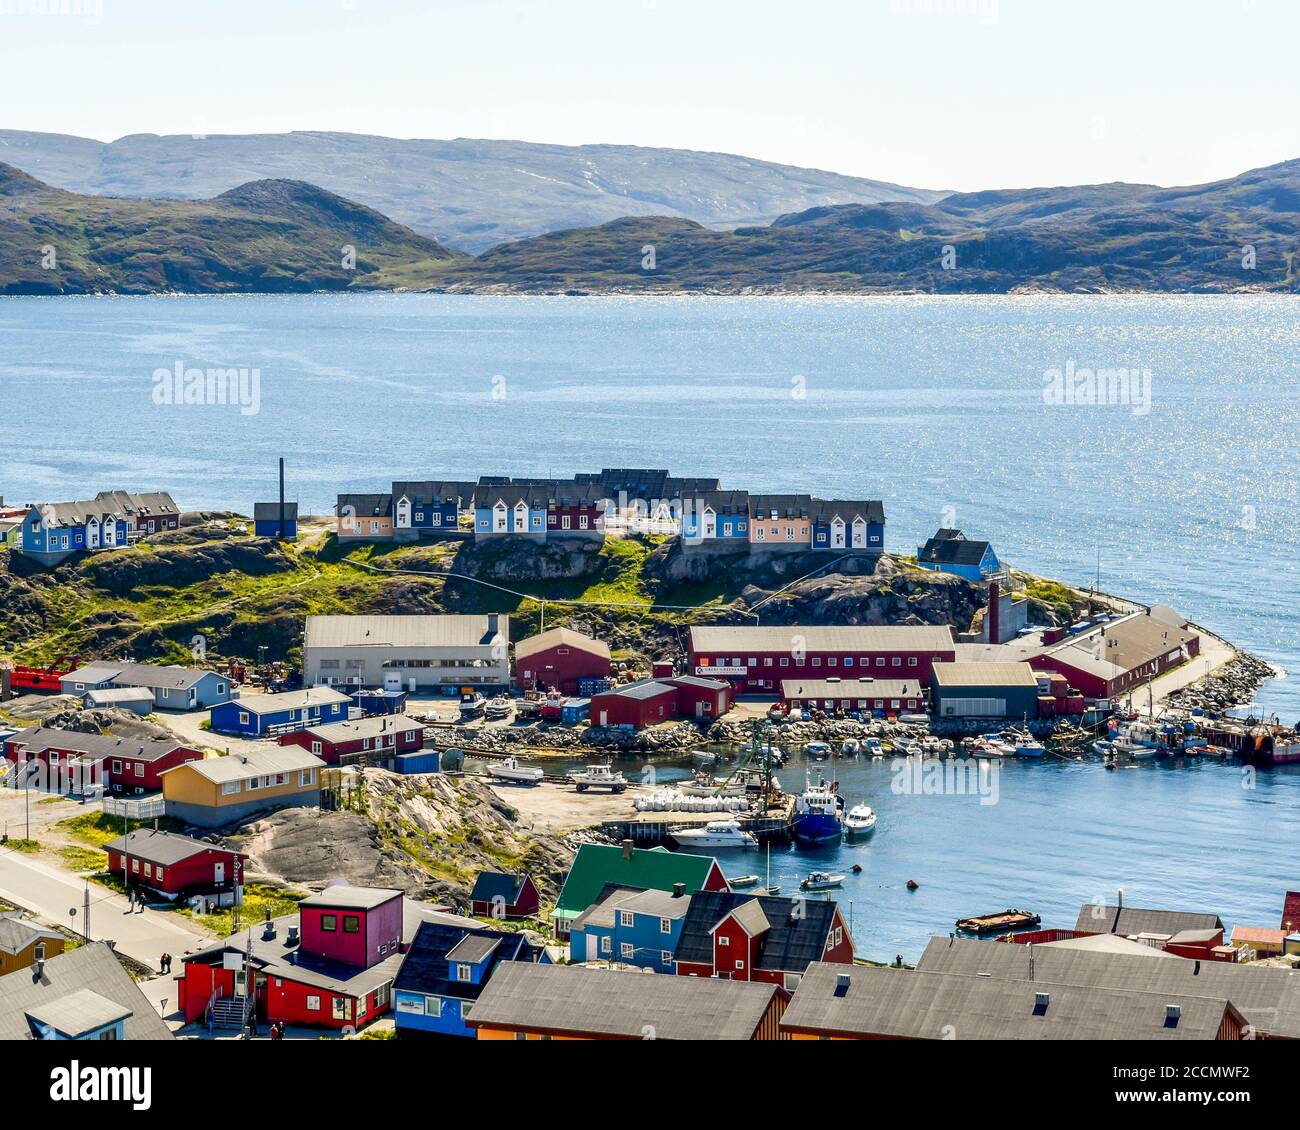 Hafen und Häuser in Qaqortoq, in der Gemeinde Kujalleq in Südgrönland, in der Nähe von Kap Thorvaldsen. Stockfoto